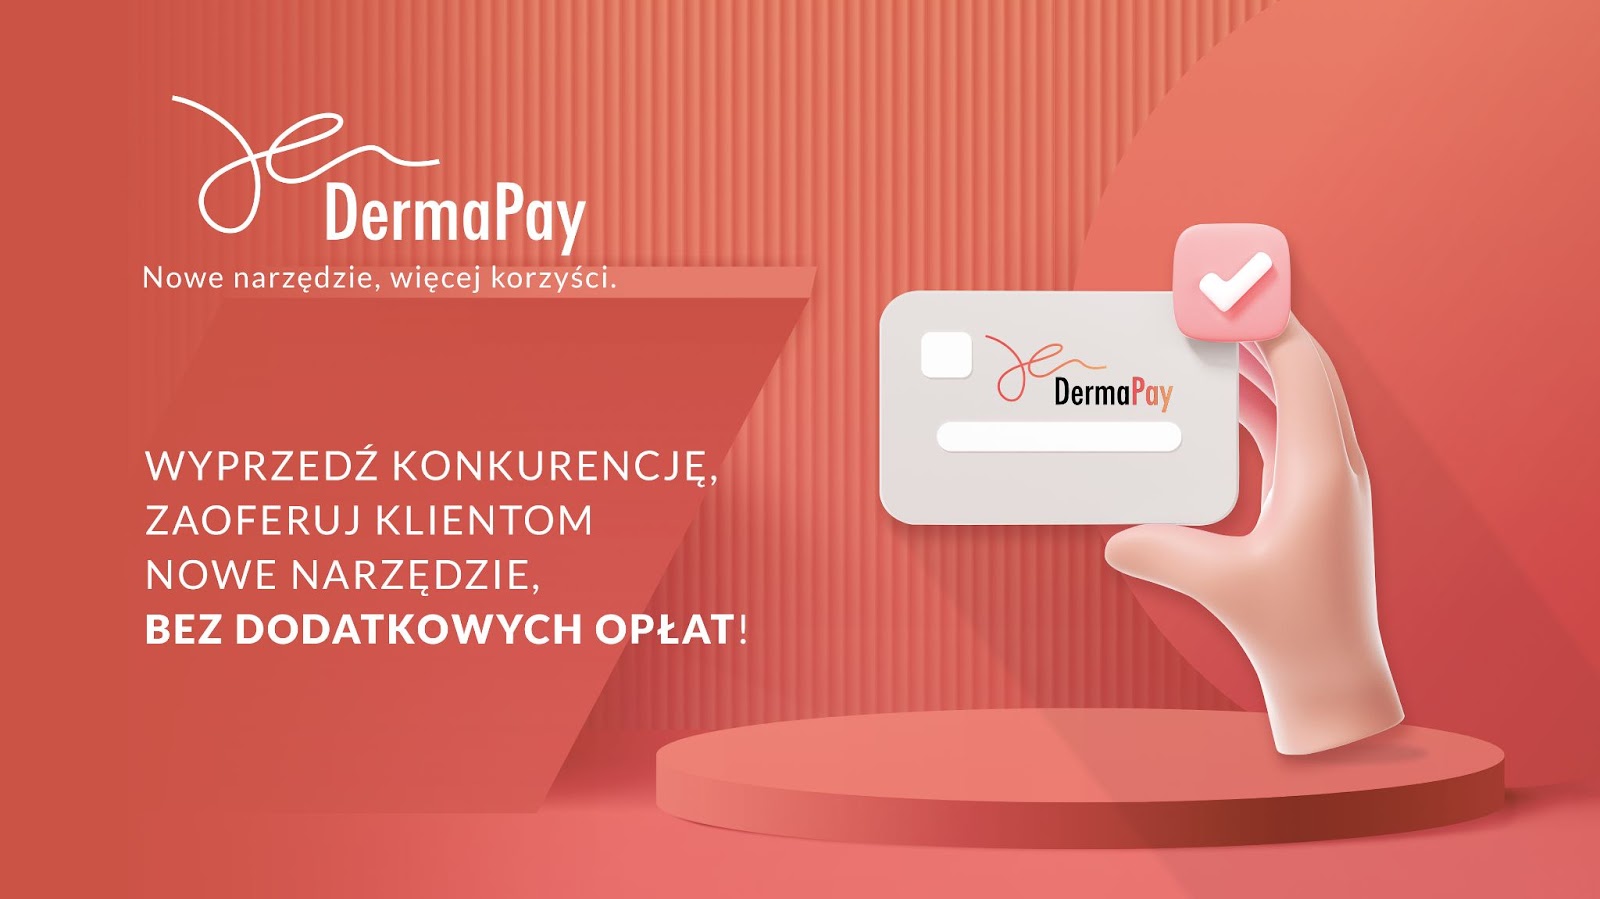 DermaPay: Jak działa system ratalnych płatności za zabiegi?